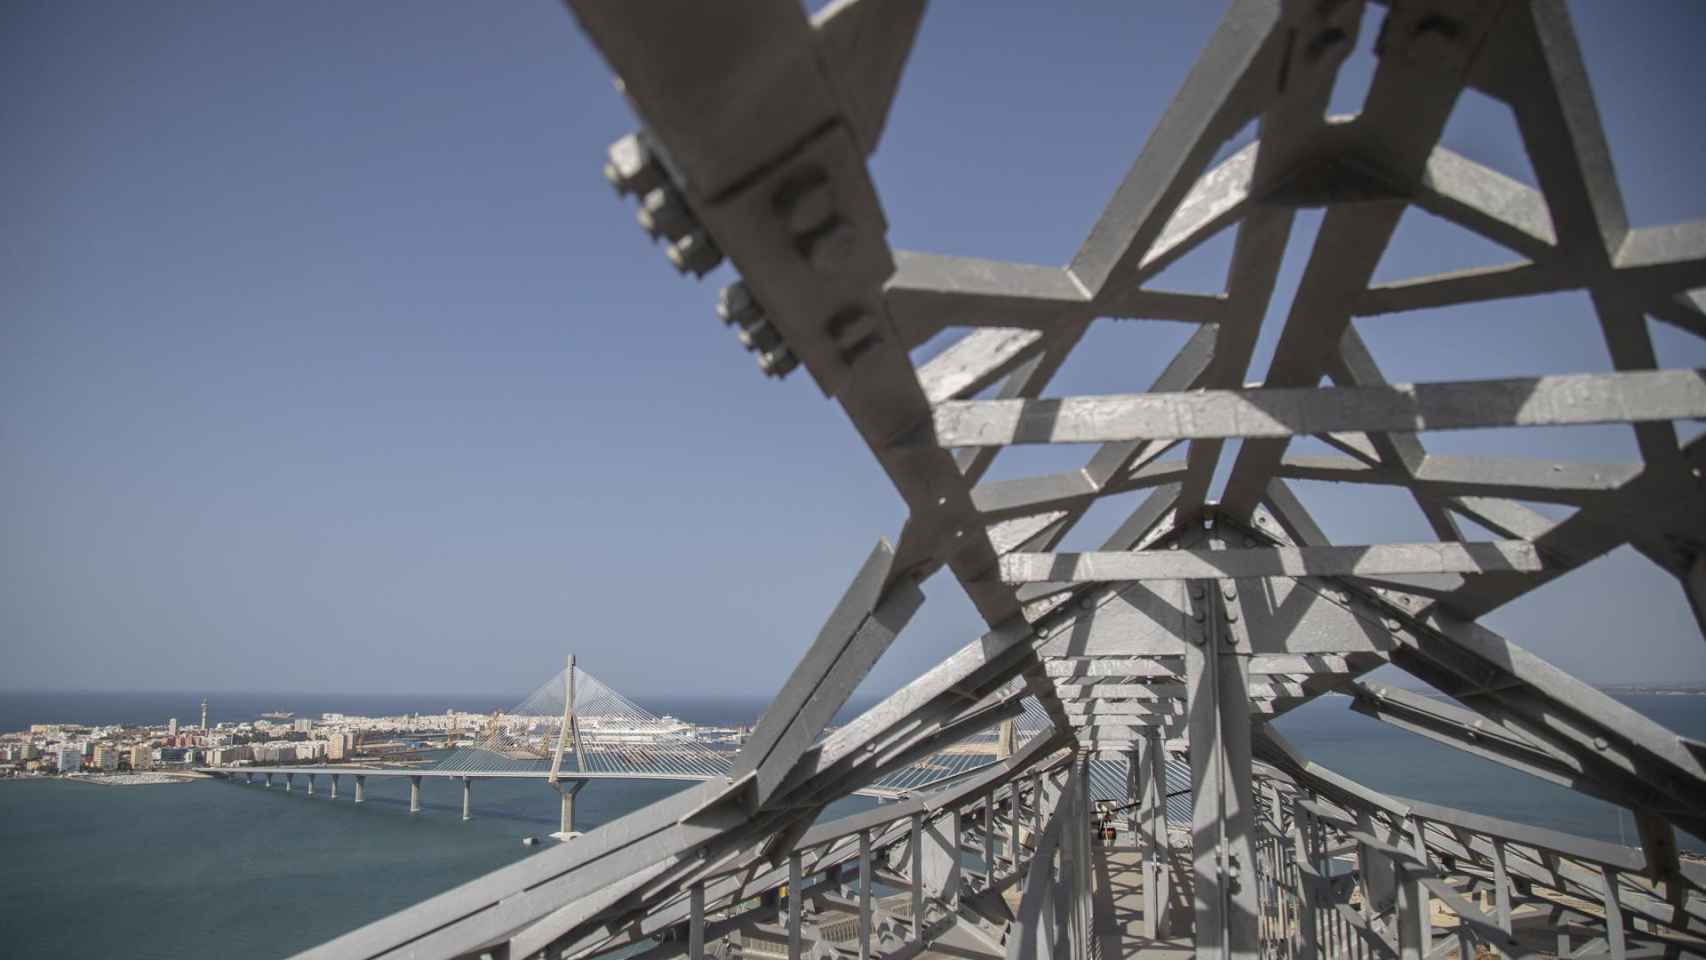 La ciudad de Cádiz vista desde una de las torres eléctricas.